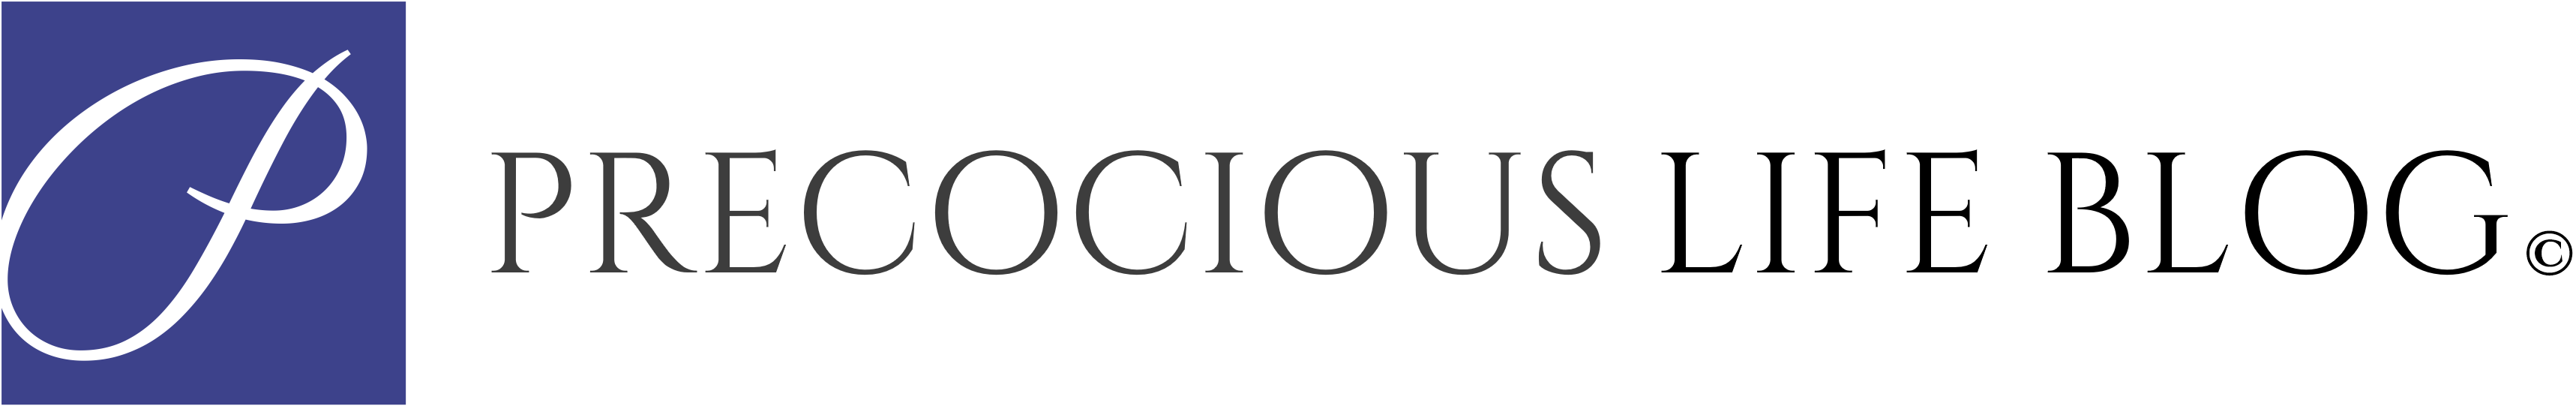 precocious life blog logo